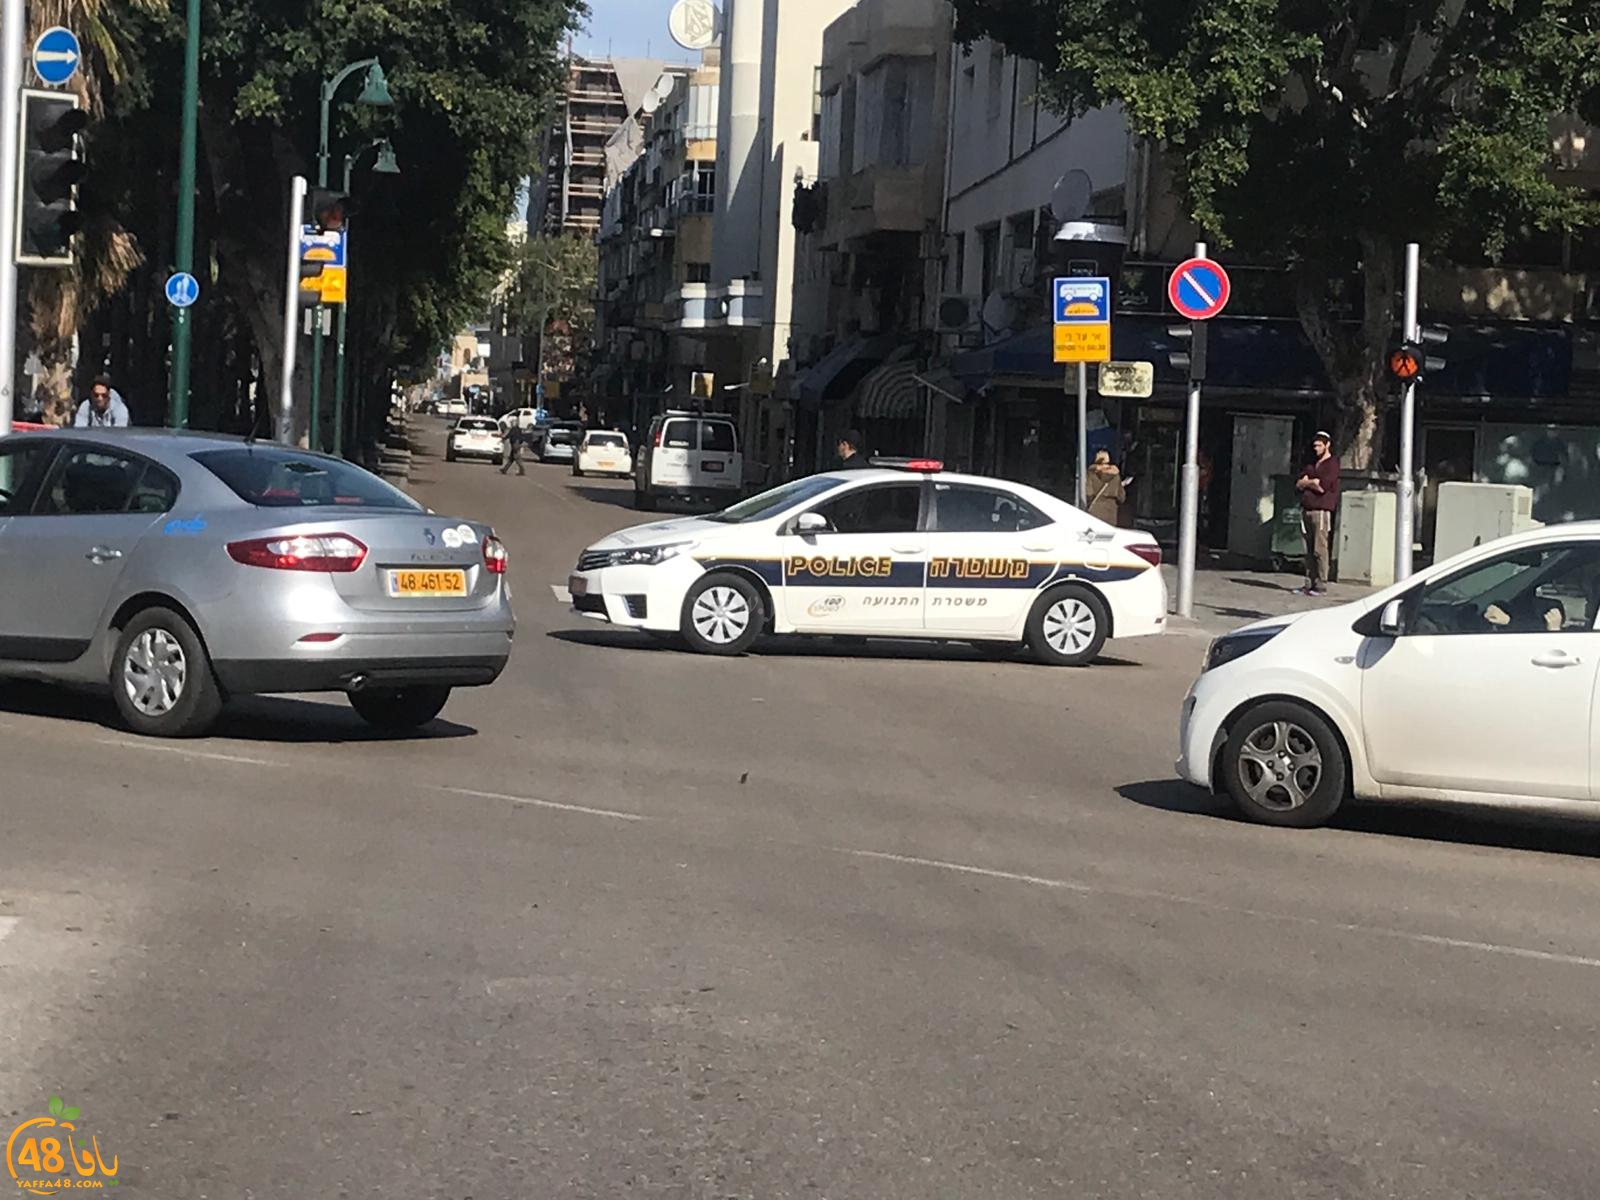  بالصور: الشرطة تُغلق شارع شديروت يروشلايم بيافا لمعالجة جسم مشبوه 